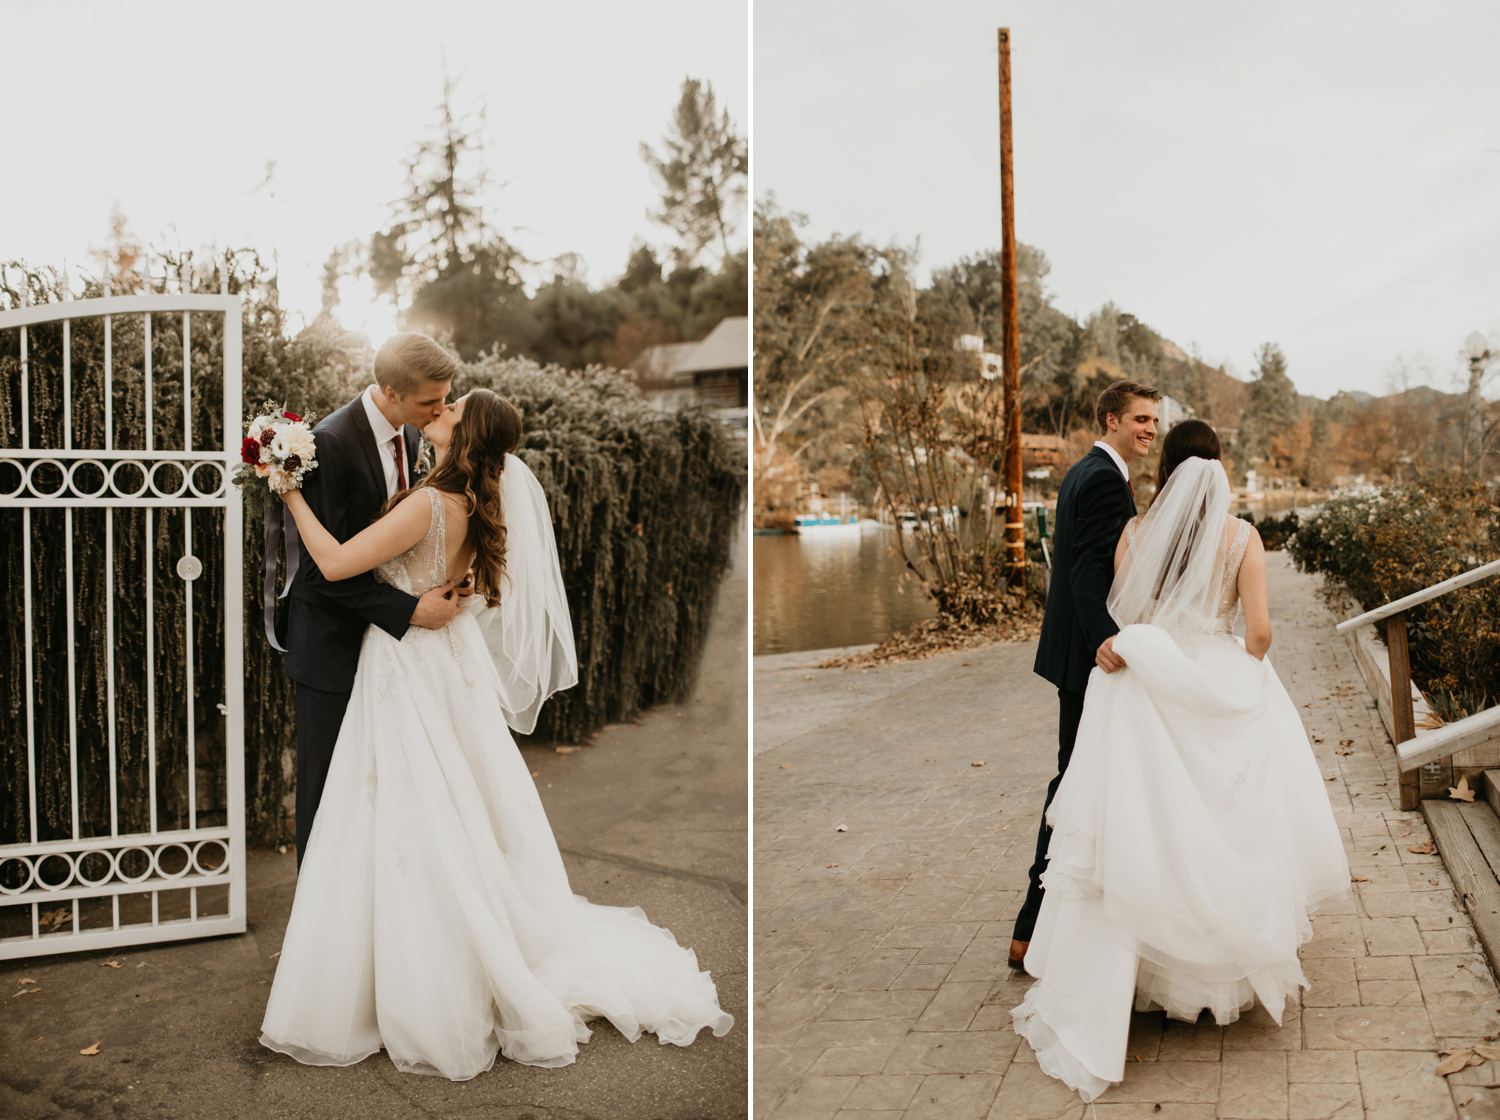 Bree and Logans Lodge at Malibou Lake wedding by Malibu Wedding Photographer, Kadi Tobin